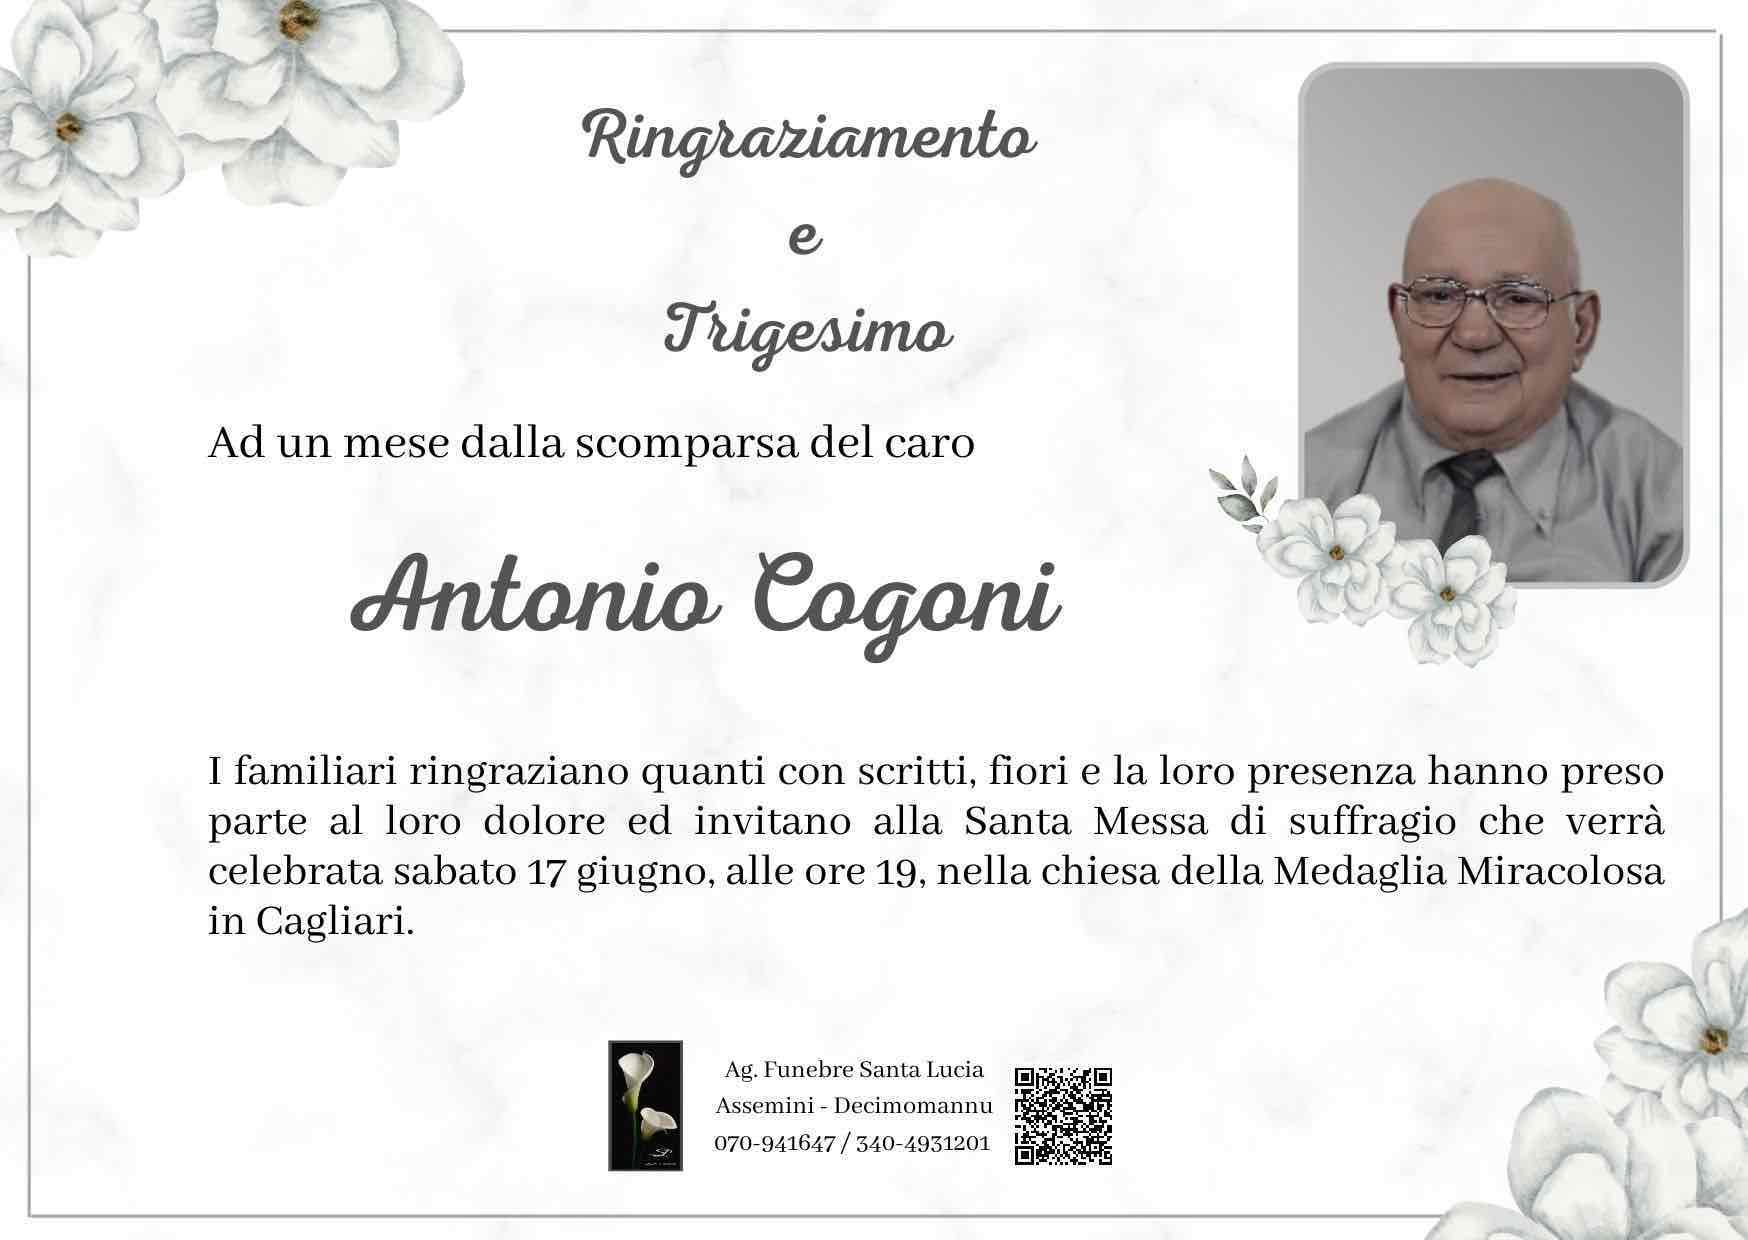 Antonio Cogoni